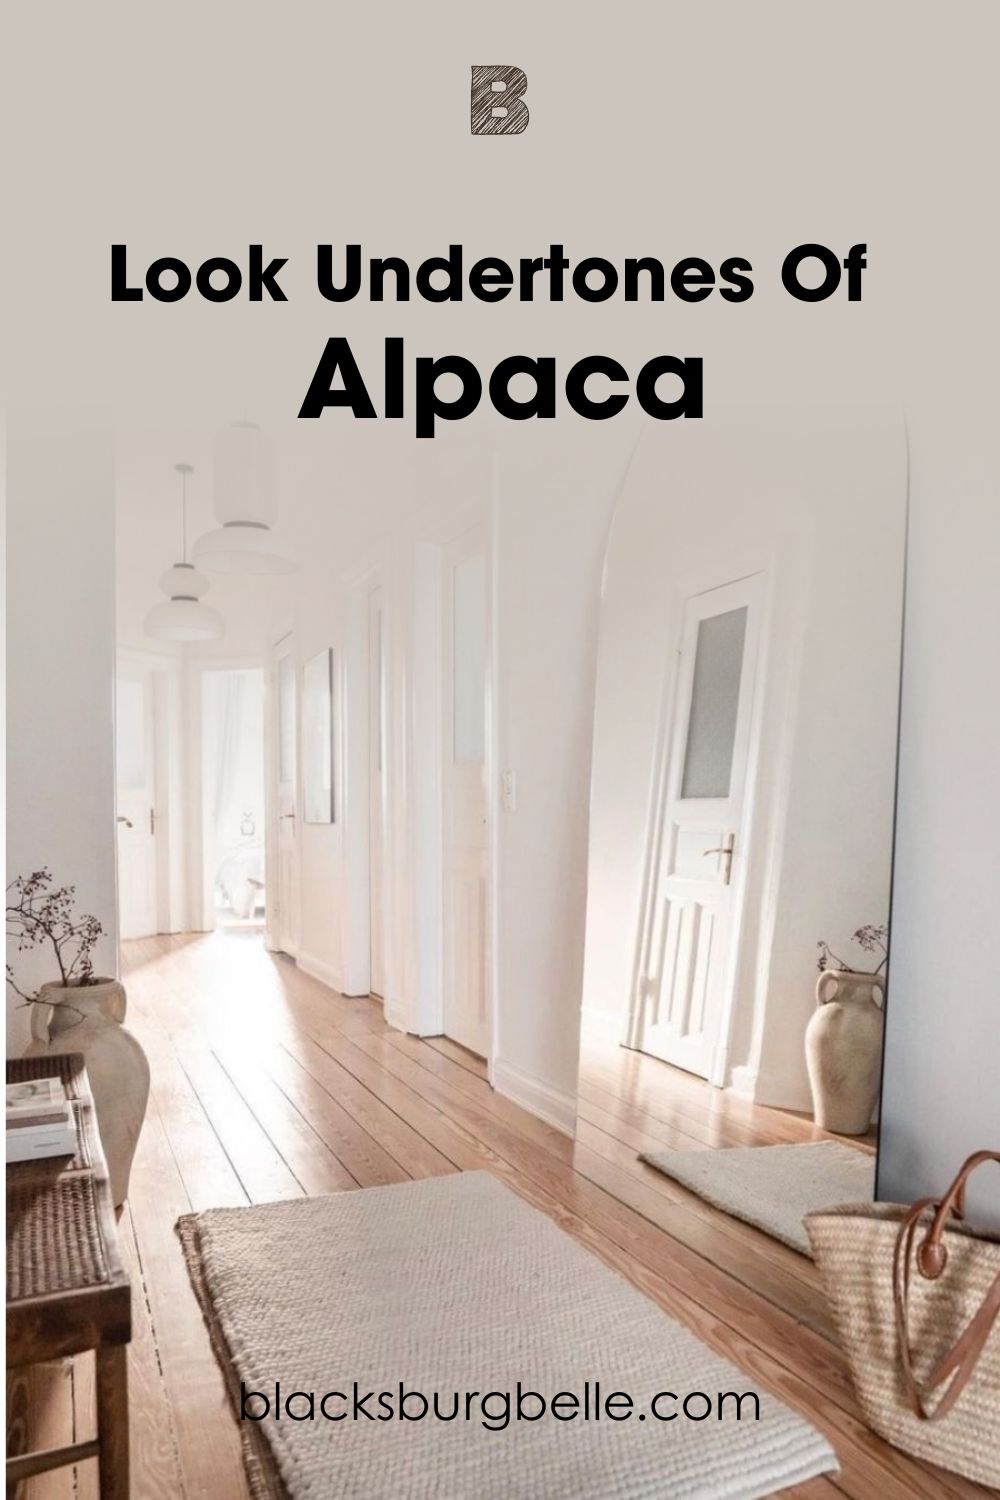 A Closer Look at Alpaca’s Undertones